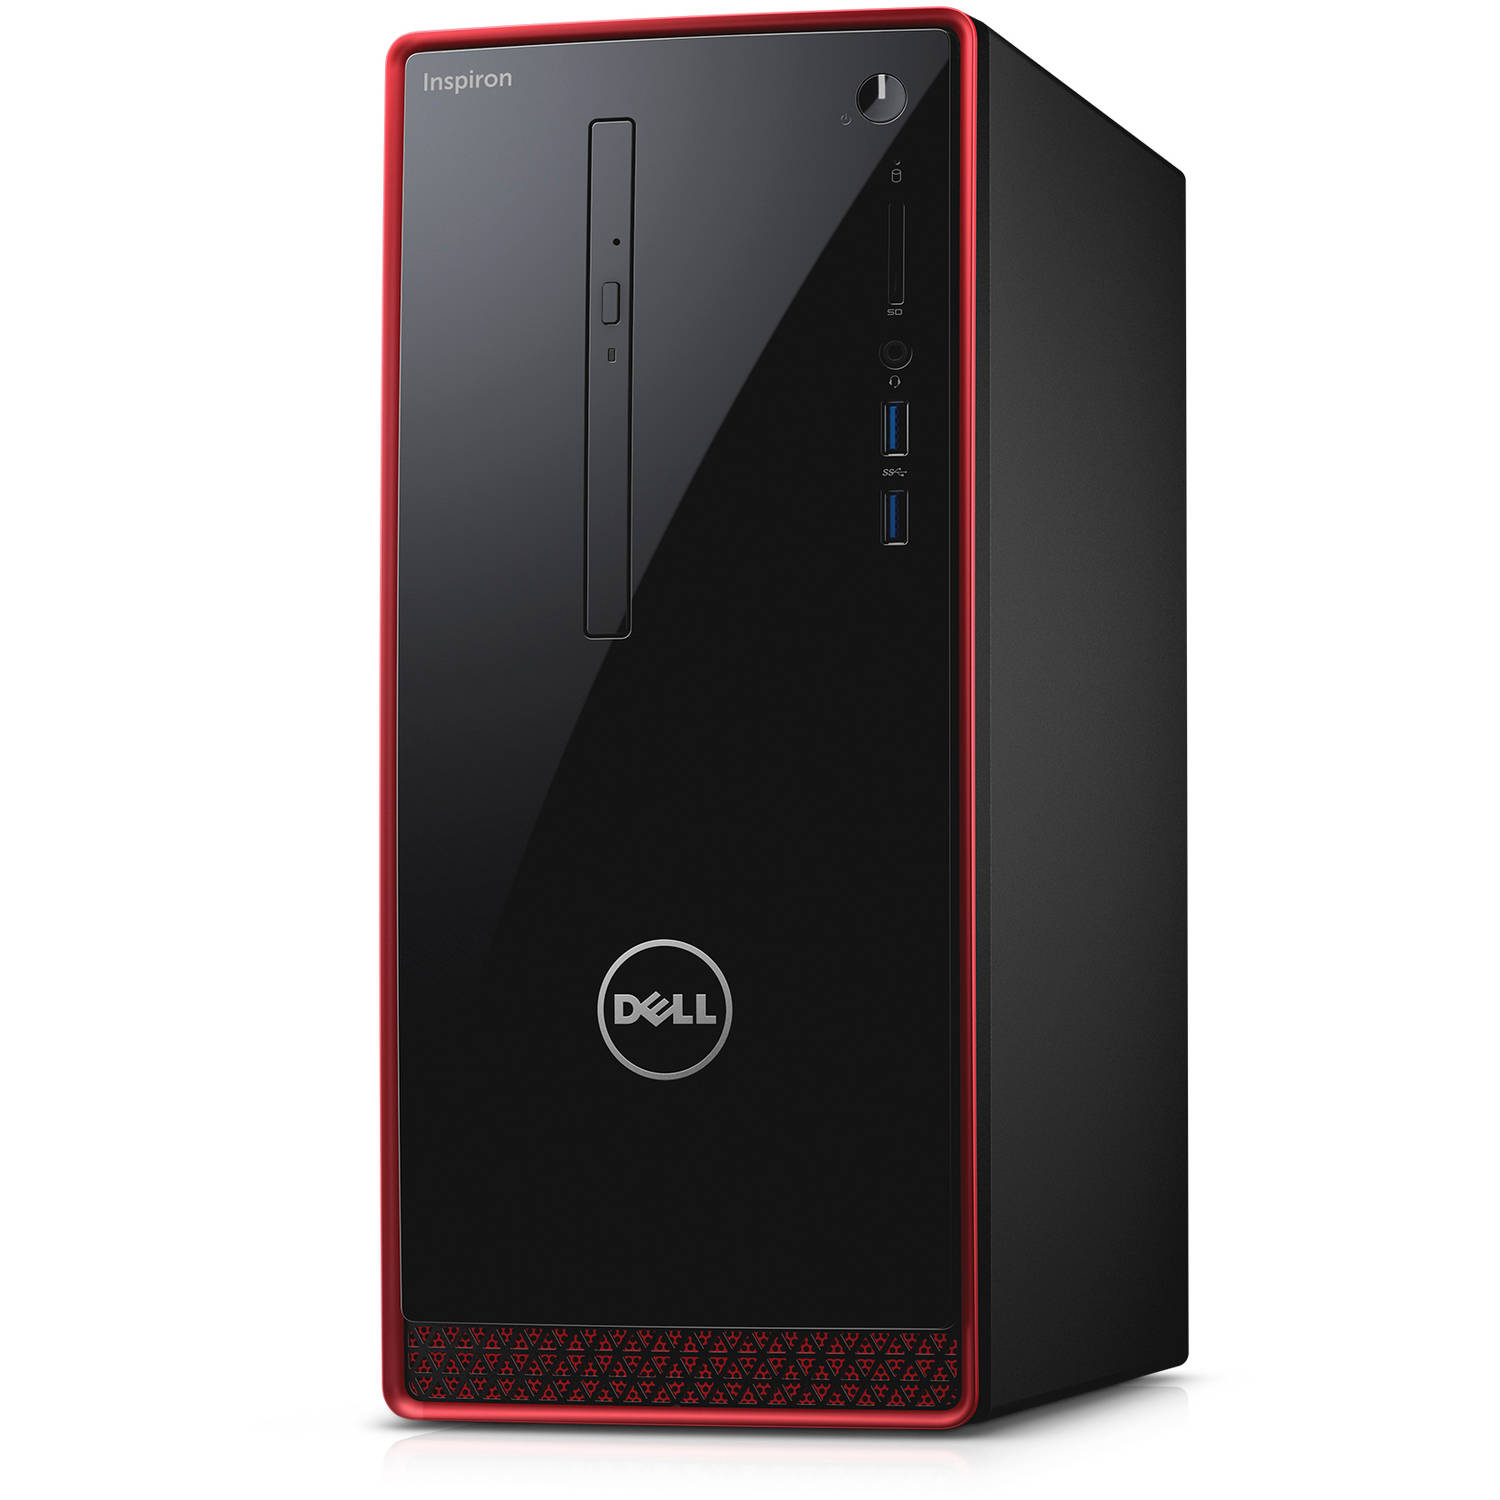 Dell i3656-3355BLK-PUS Inspiron A10-8700P 1.8GHz Radeon R9 360 2GB